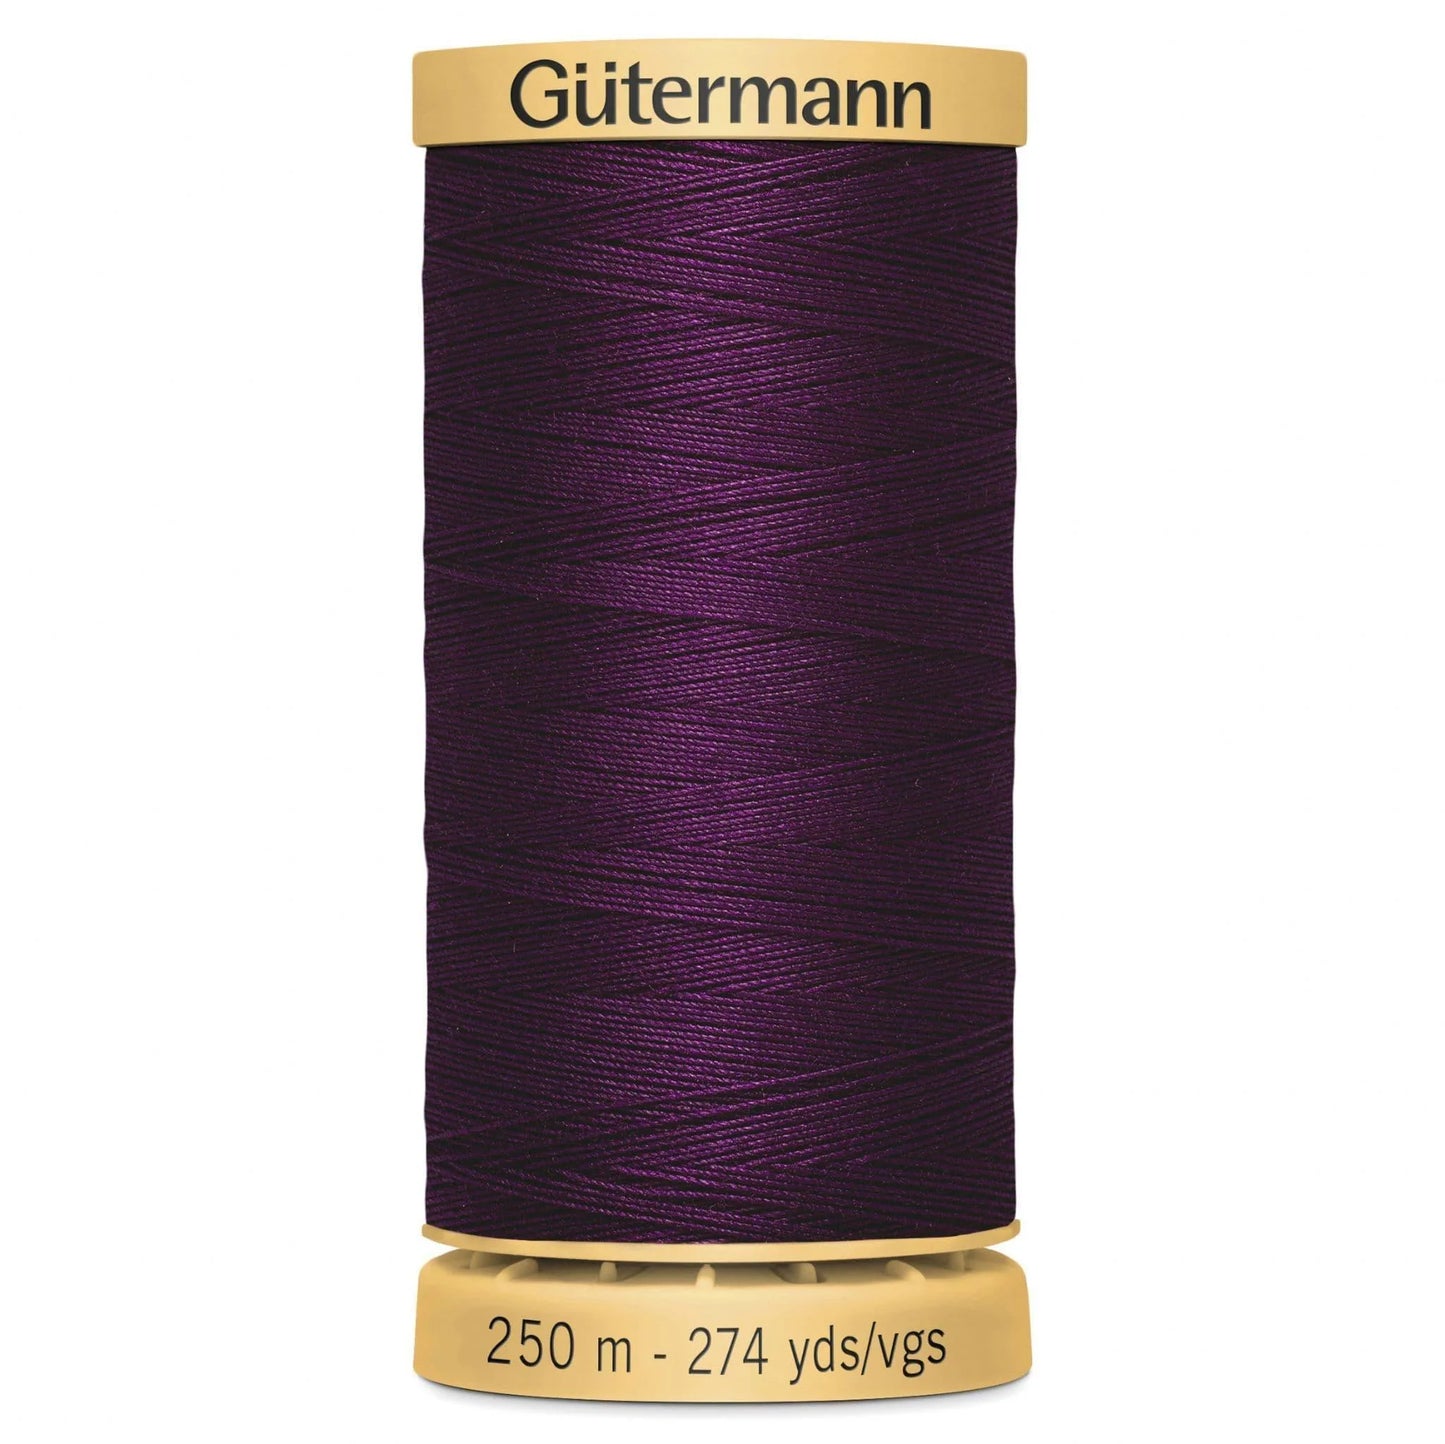 3832 Gutermann Natural Cotton Thread 250m - Royal Purple